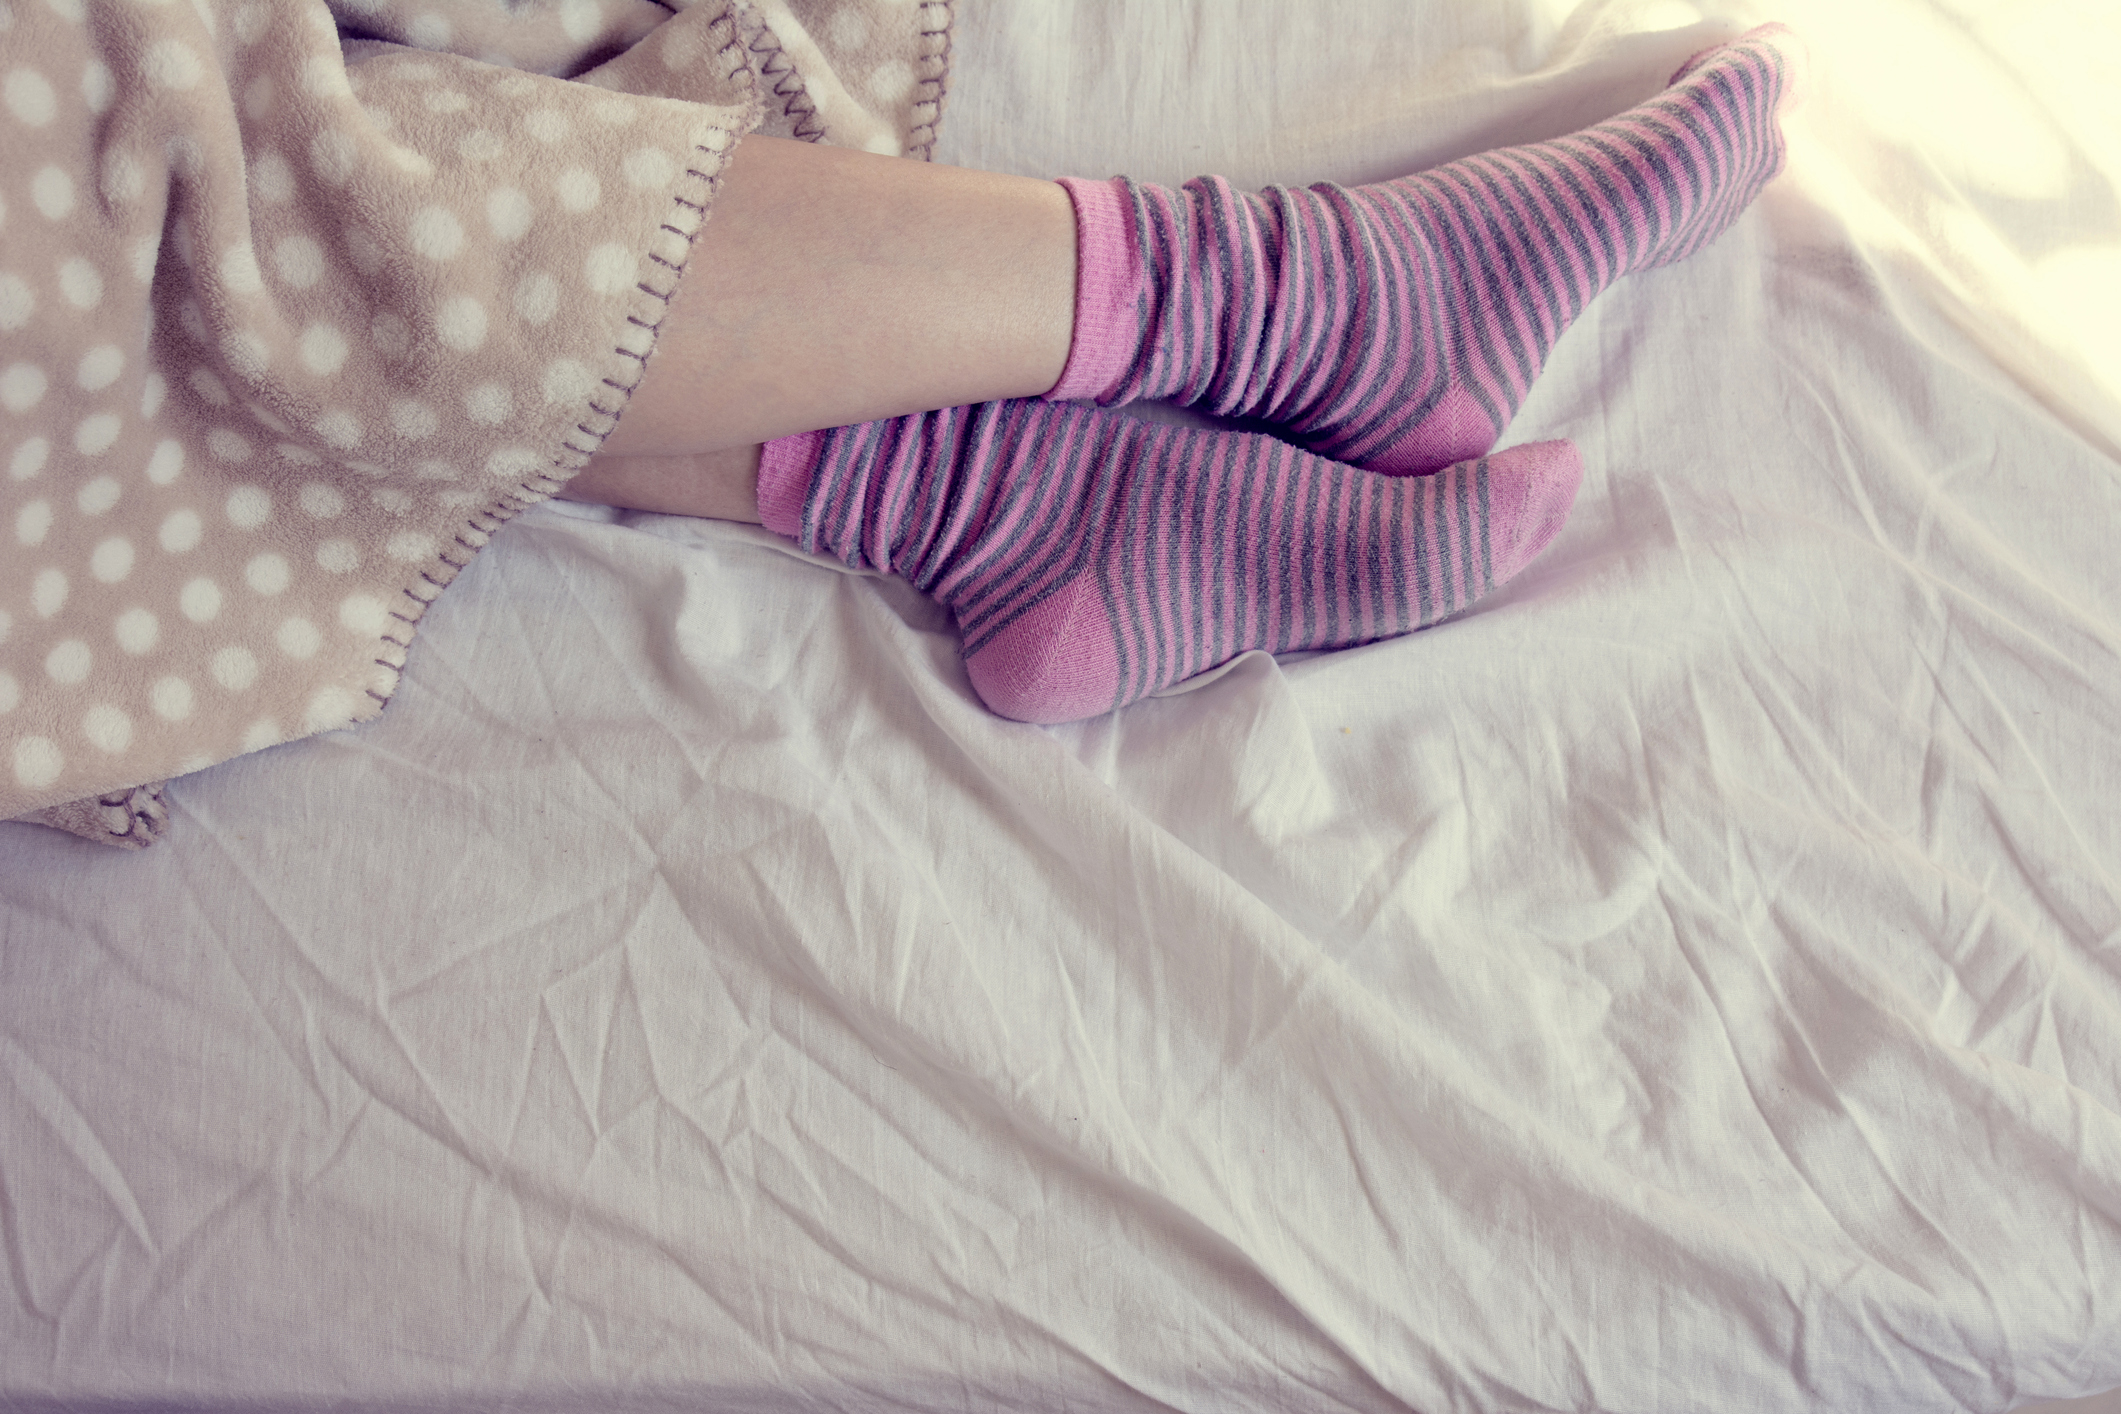 Jobban alszik, aki éjszaka zoknit visel!. Furán hangzik, de ez az oka -  Blikk Rúzs